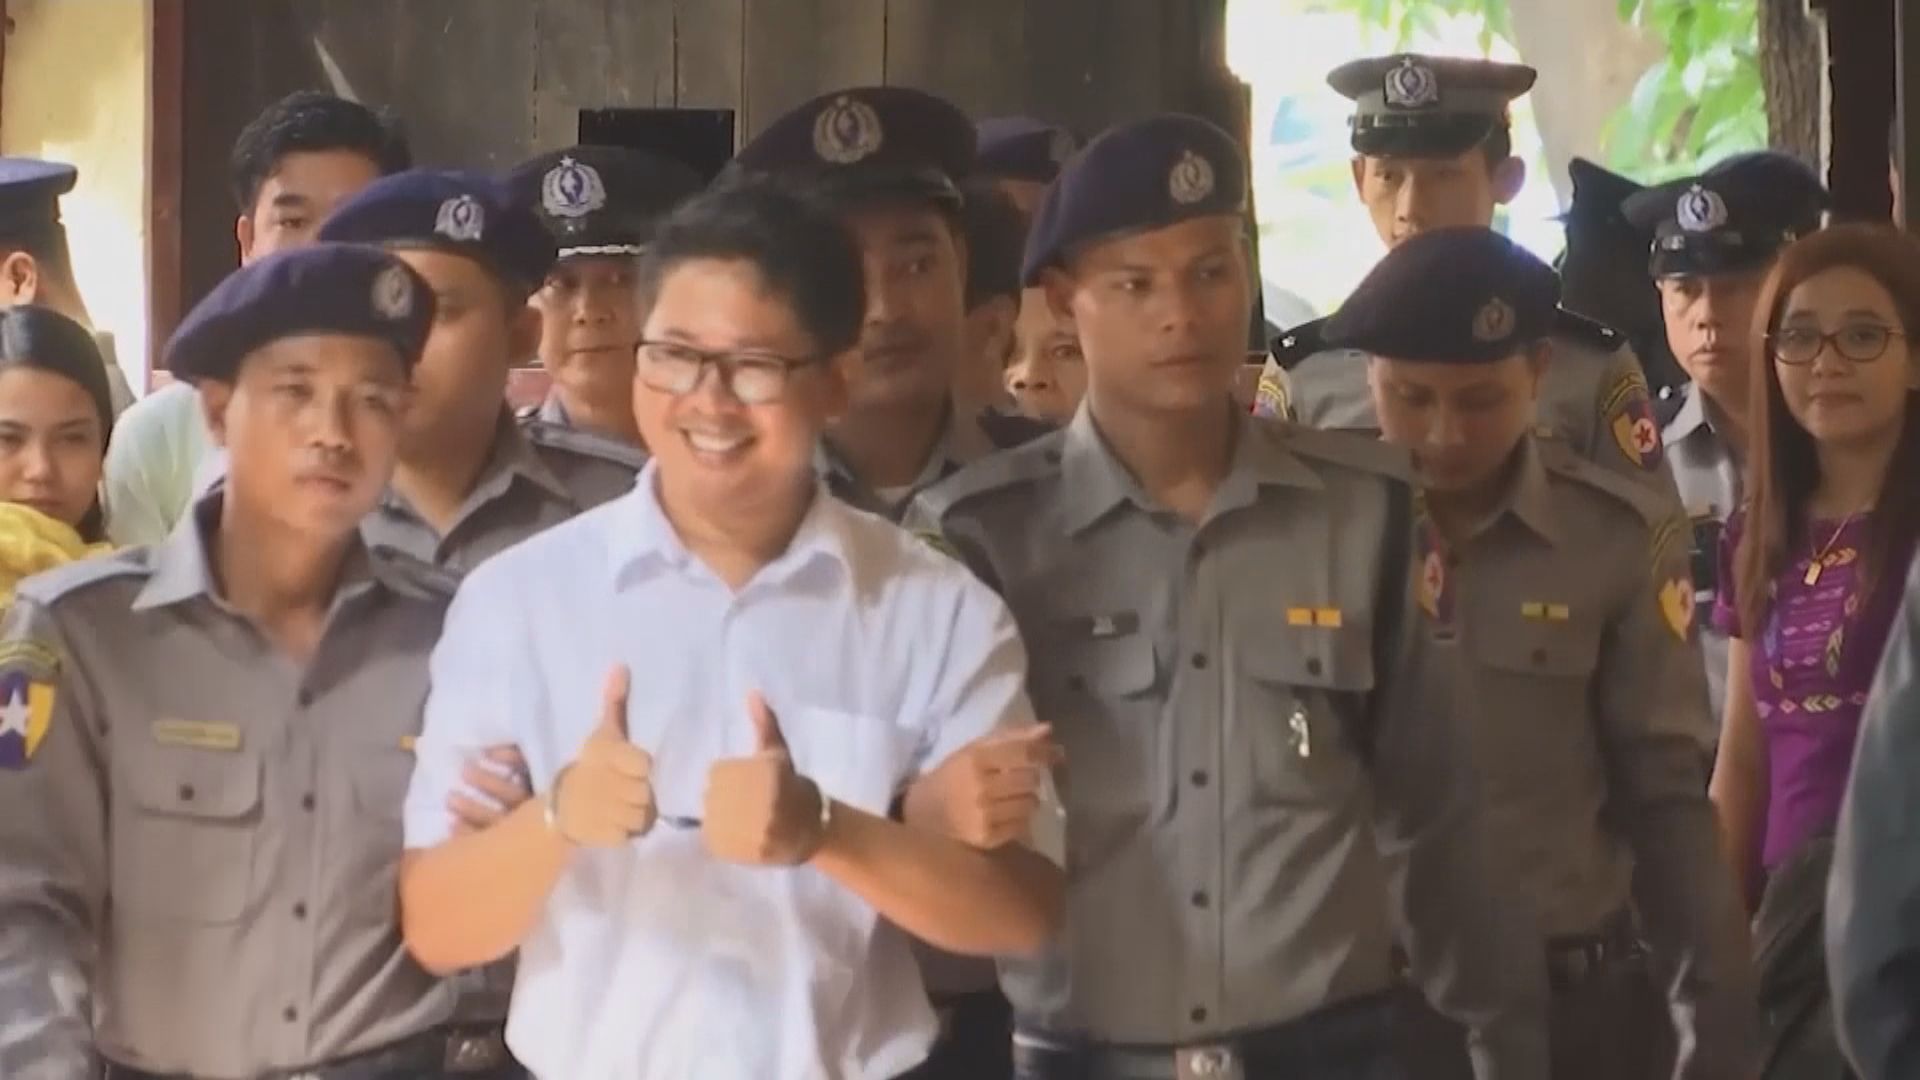 緬甸最高法院駁回兩路透社記者上訴